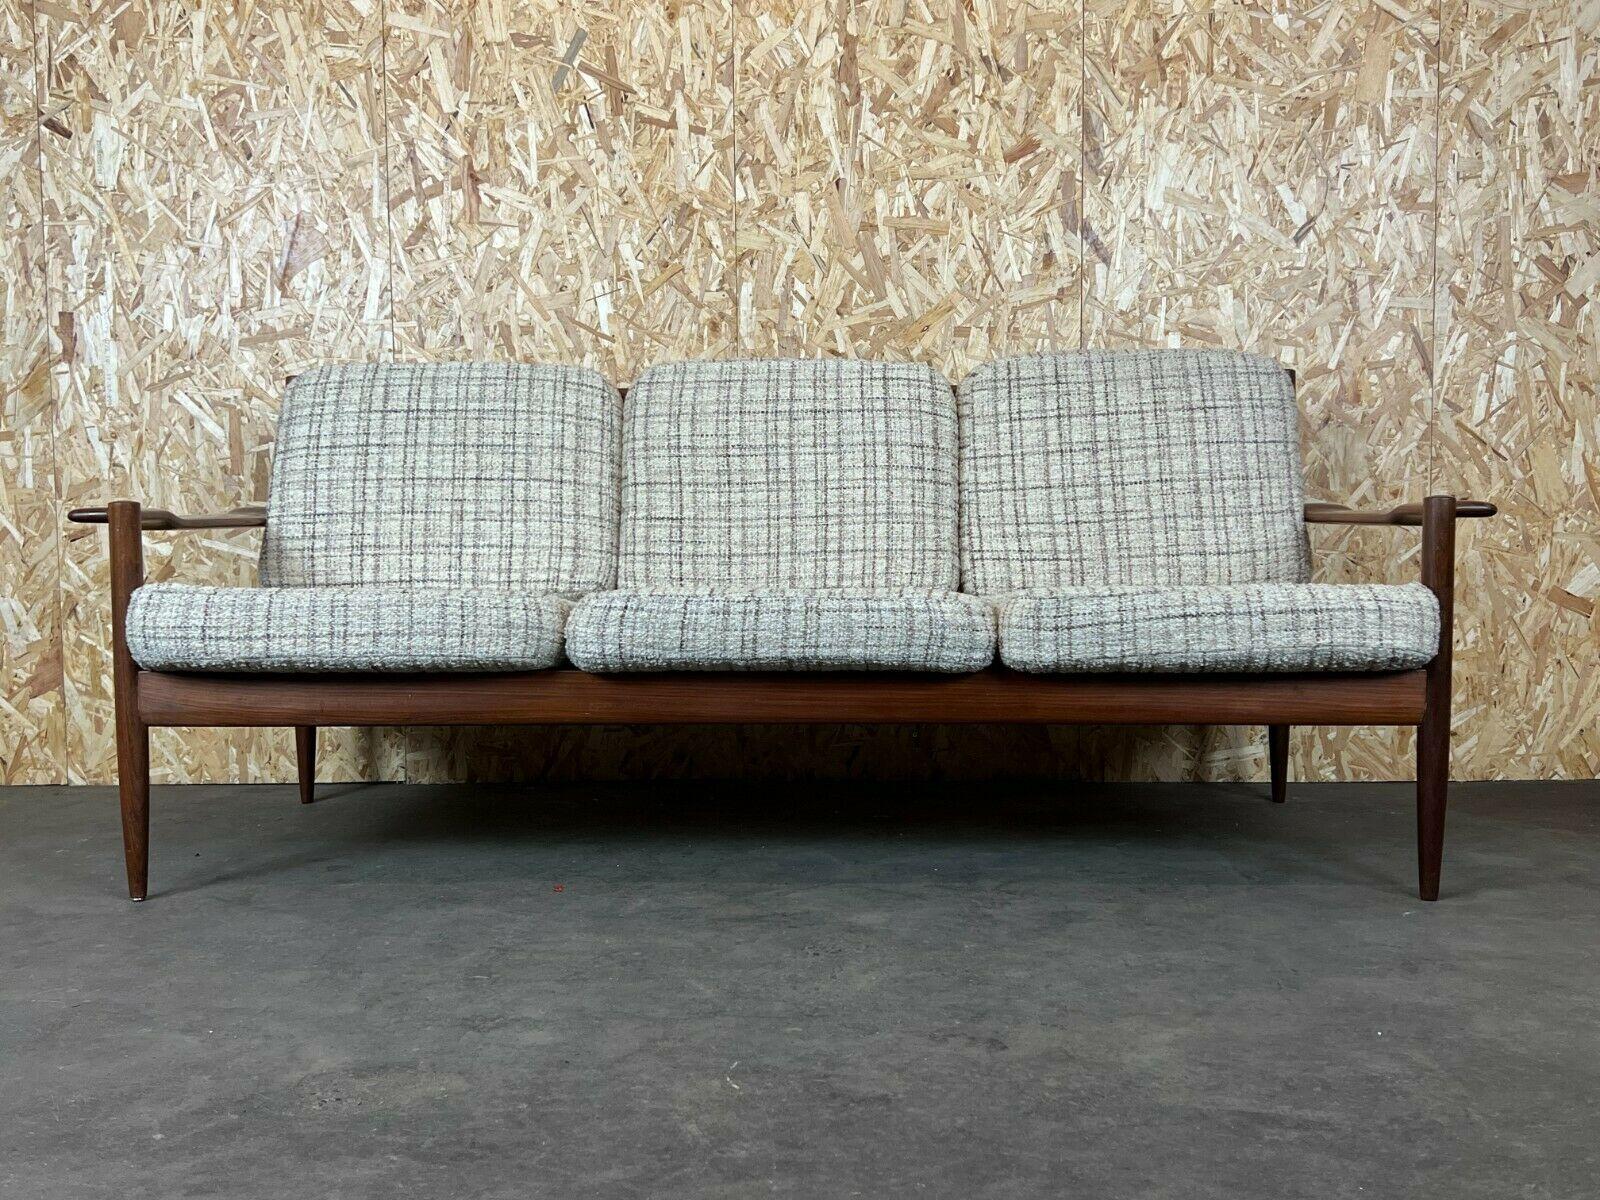 60s 70s teck sofa 3 seater couch seating set Danish Modern Design Denmark

Objet : canapé

Fabricant :

Condition : bon - vintage

Âge : environ 1960-1970

Dimensions :

184.5cm x 79cm x 77cm
Hauteur du siège = 42 cm

Autres notes